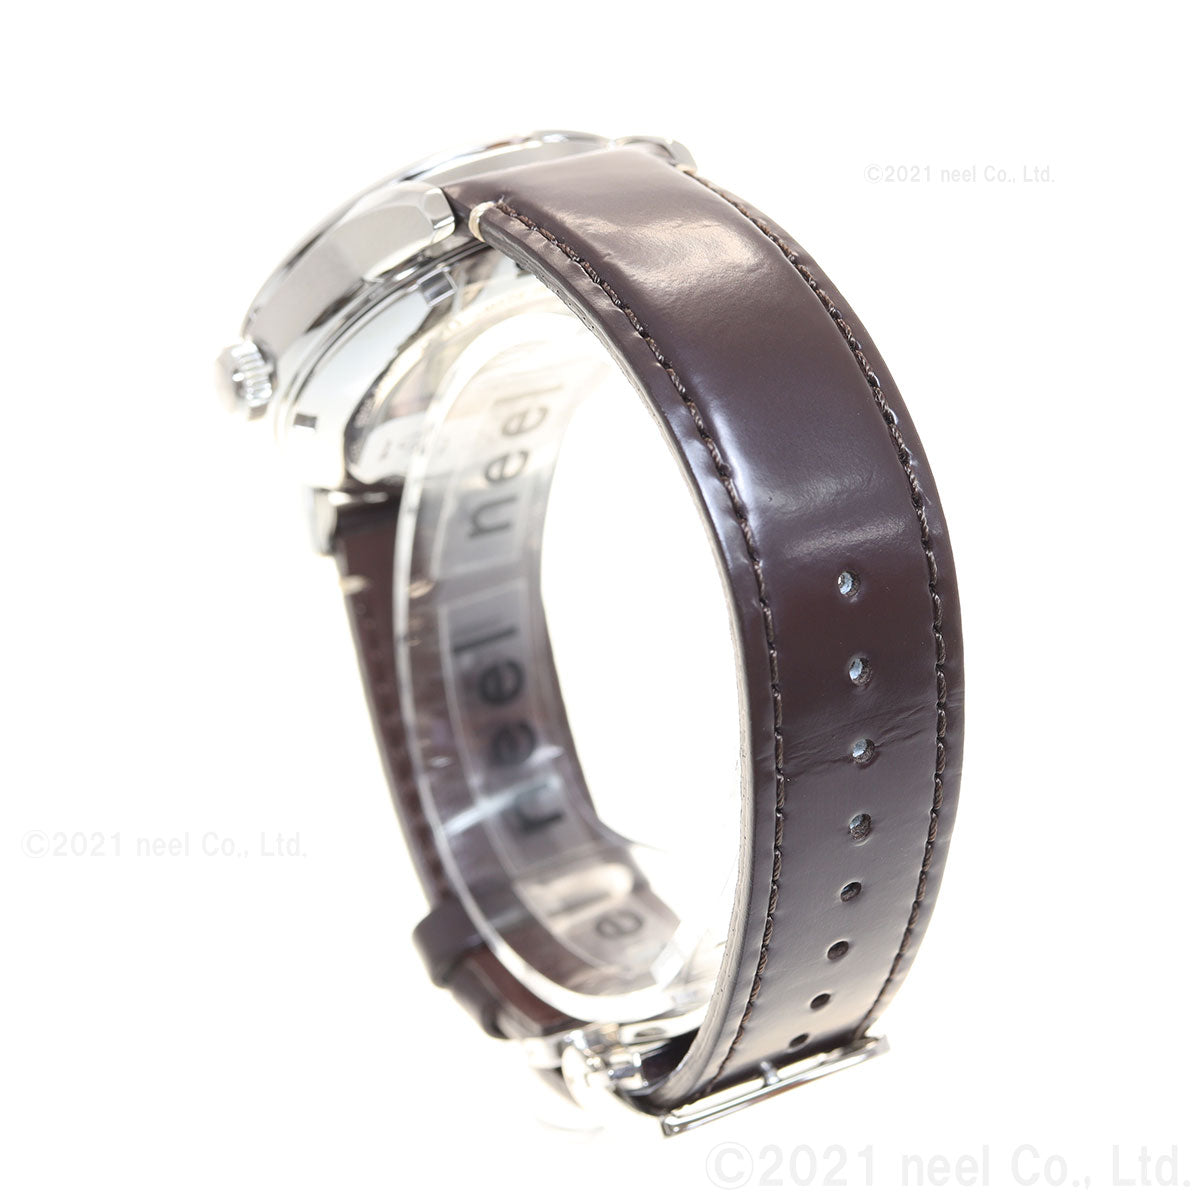 セイコー プロスペックス SEIKO PROSPEX アルピニスト メカニカル 自動巻き コアショップ専用 流通限定モデル 腕時計 メンズ SBDC161